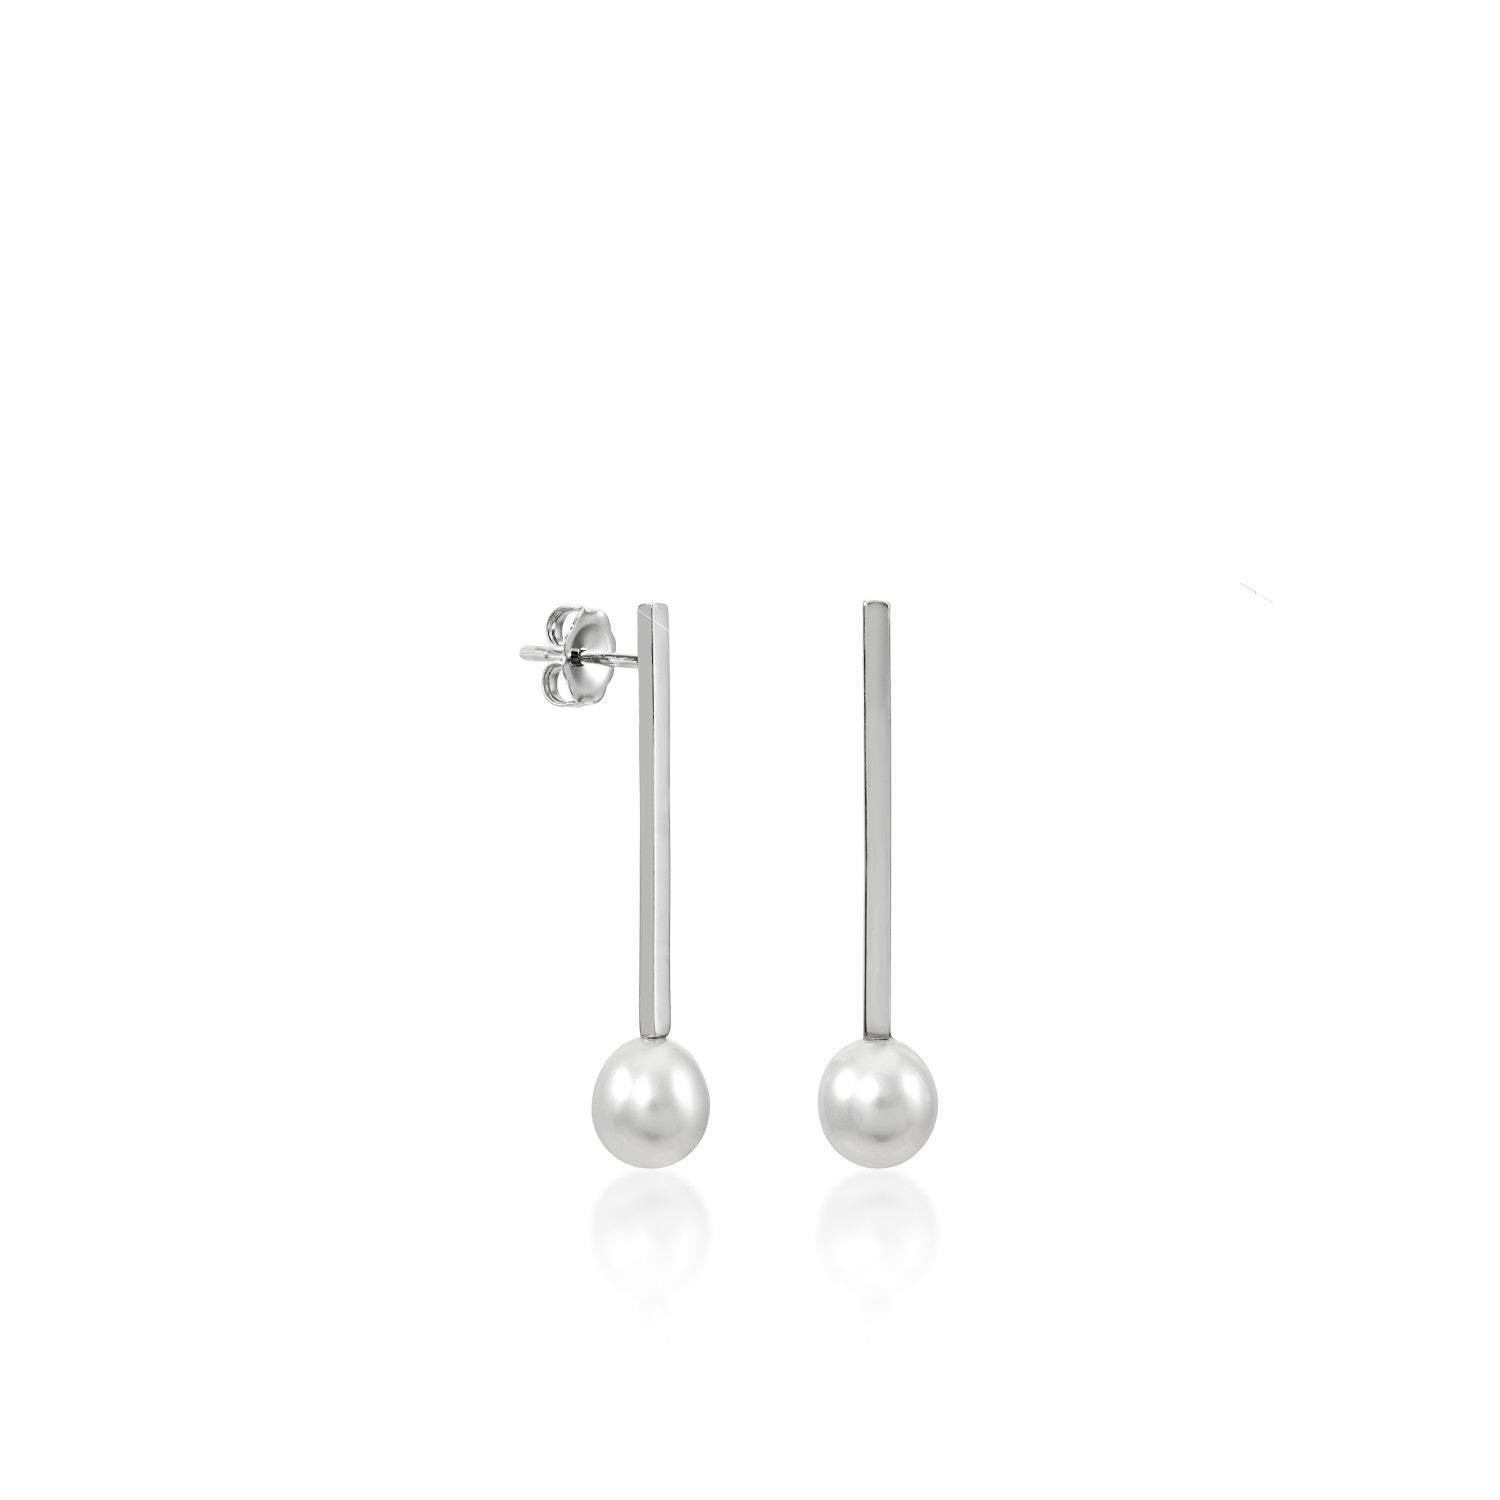 Pendientes perla de plata estilo minimalista